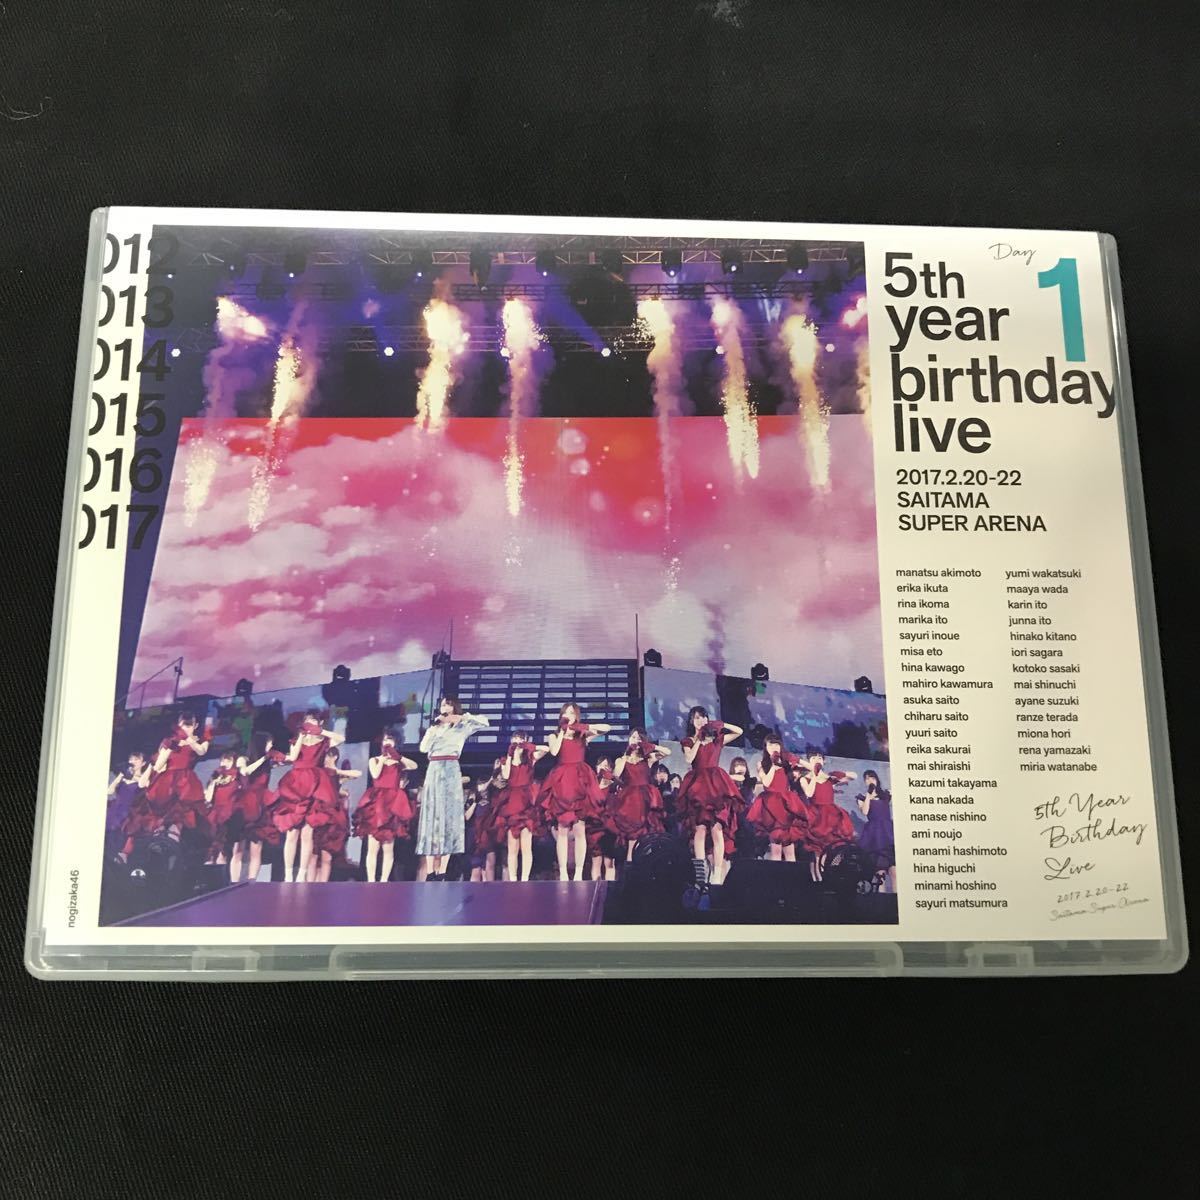 乃木坂46 5th year birthday live 2017.2.20-22 saitama super arena さいたまスーパーアリーナ day1 通常版 DVD_画像1